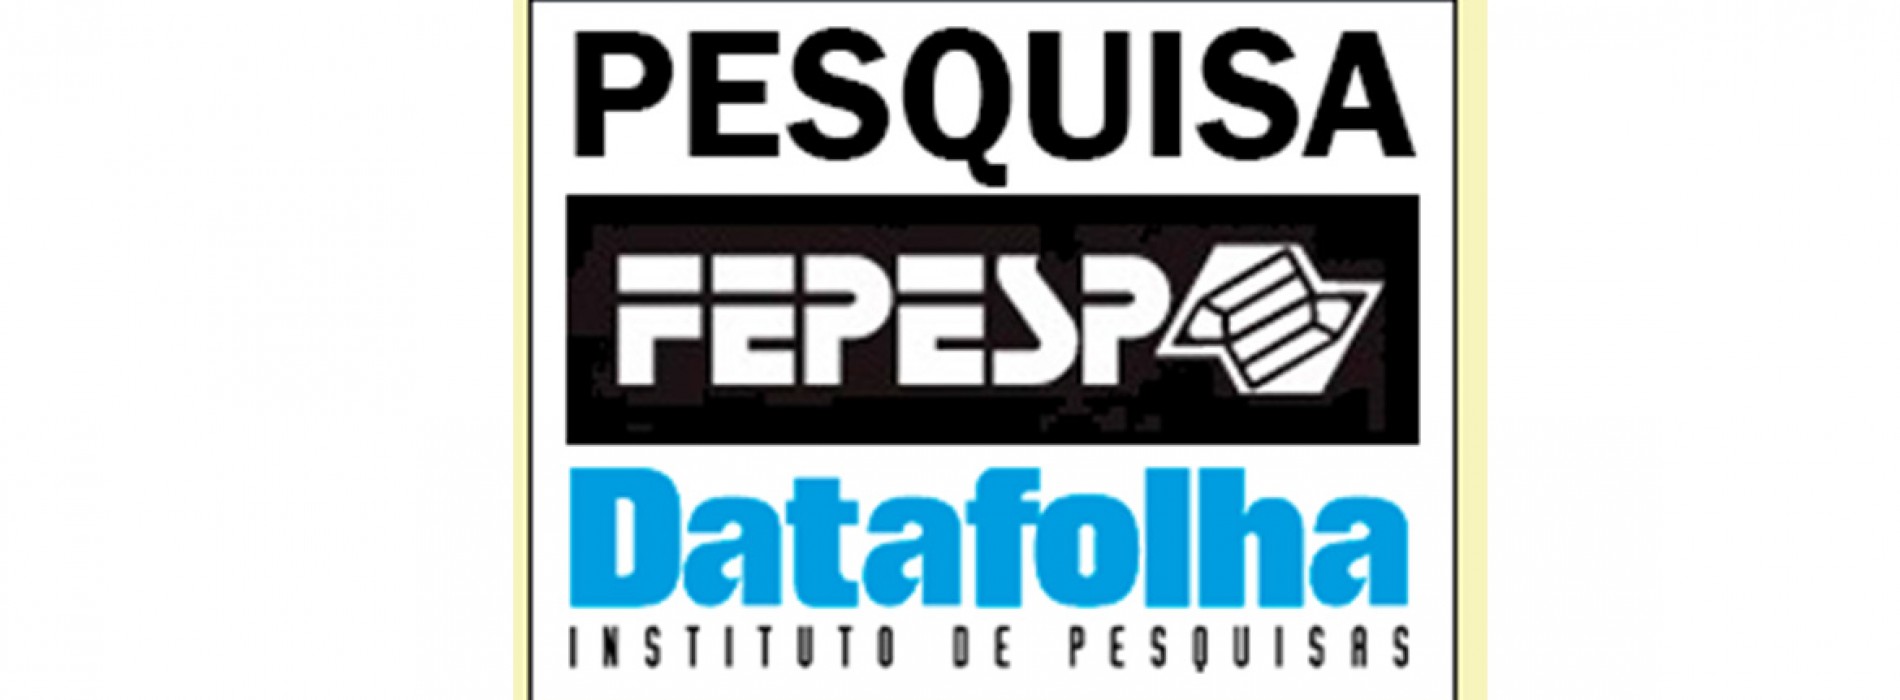 Pesquisa da Fepesp será apresentada em Congresso Educacional em Cuba